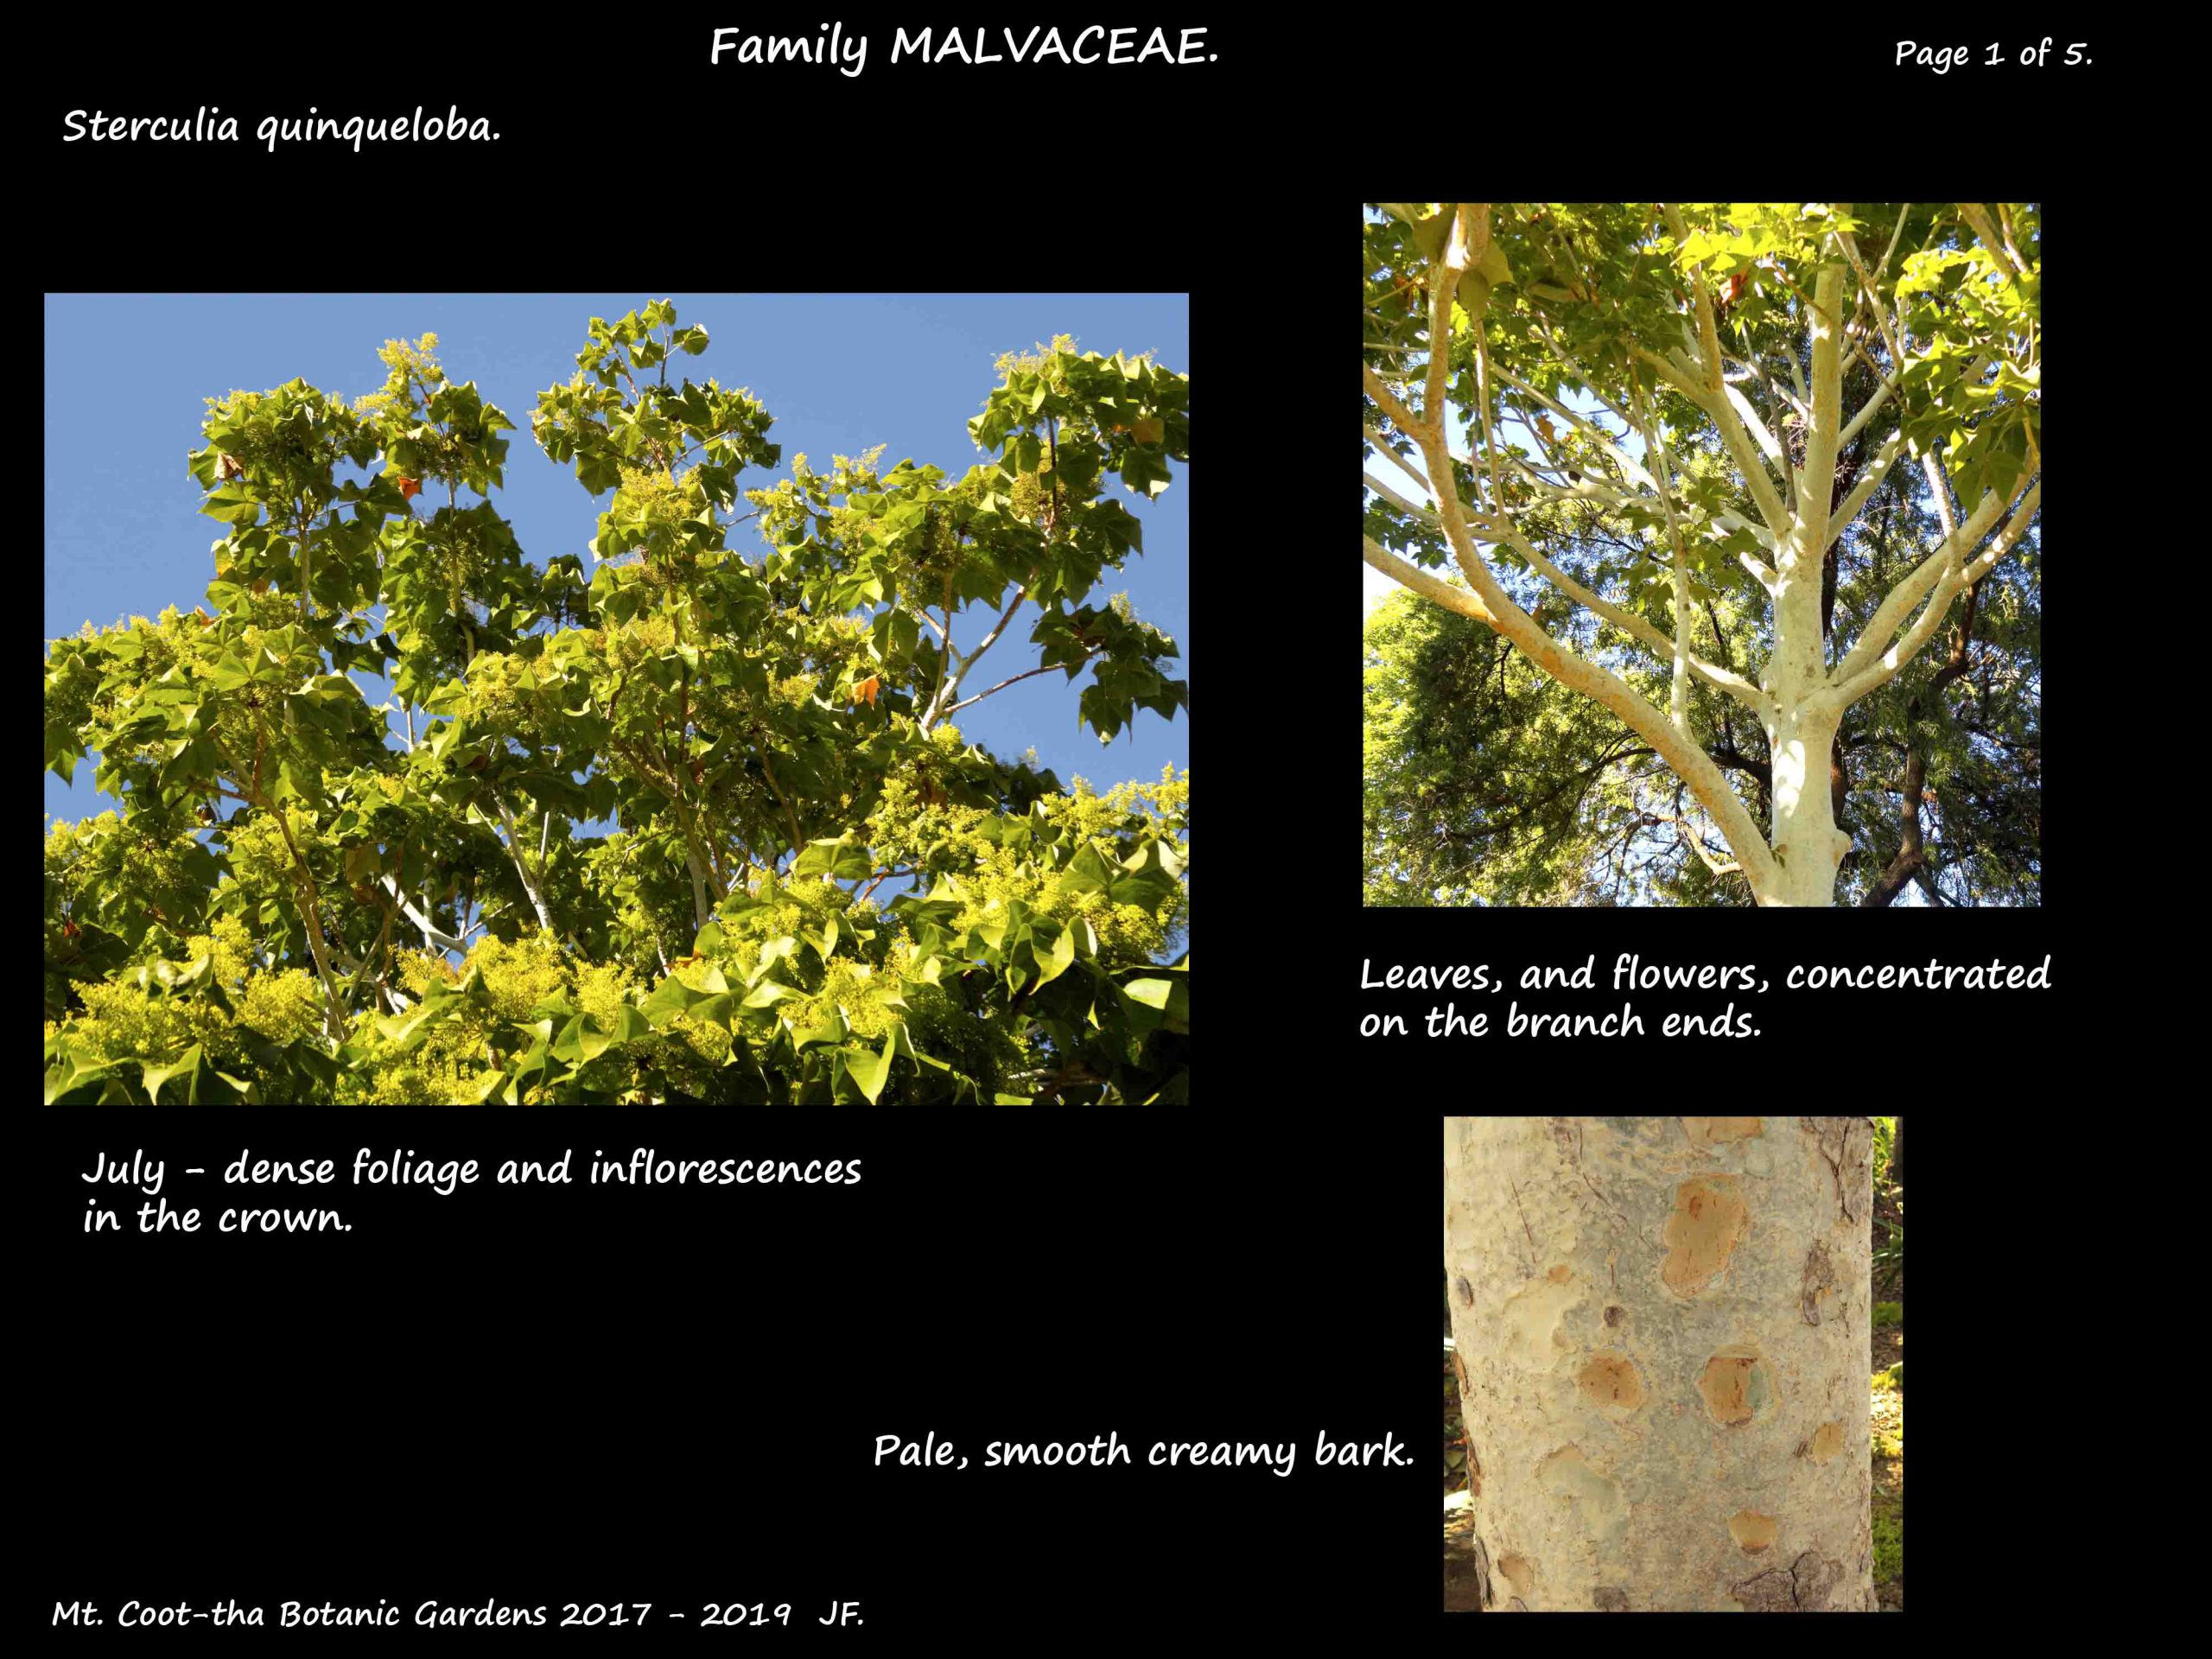 1 Sterculia quinqueloba tree